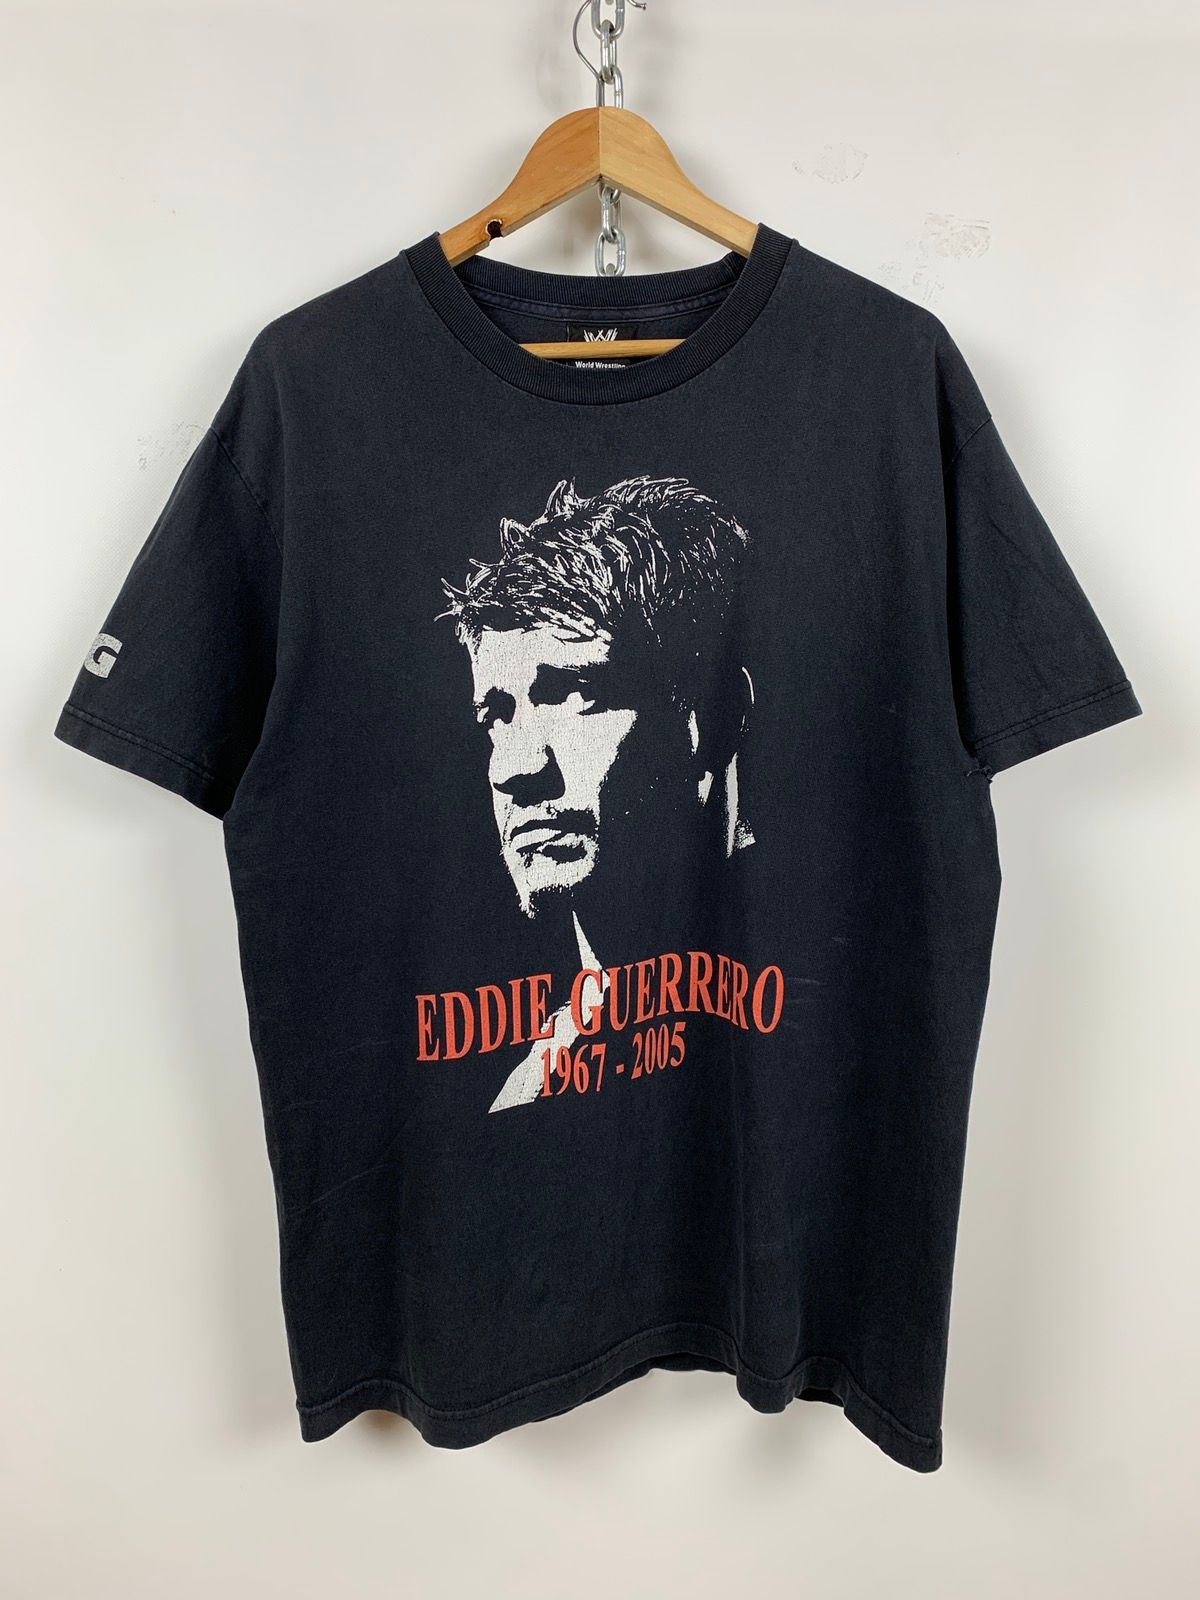 Pre-owned Vintage X Wwe 2002 Vintage Eddie Guerrero Wwe T-shirt In Black